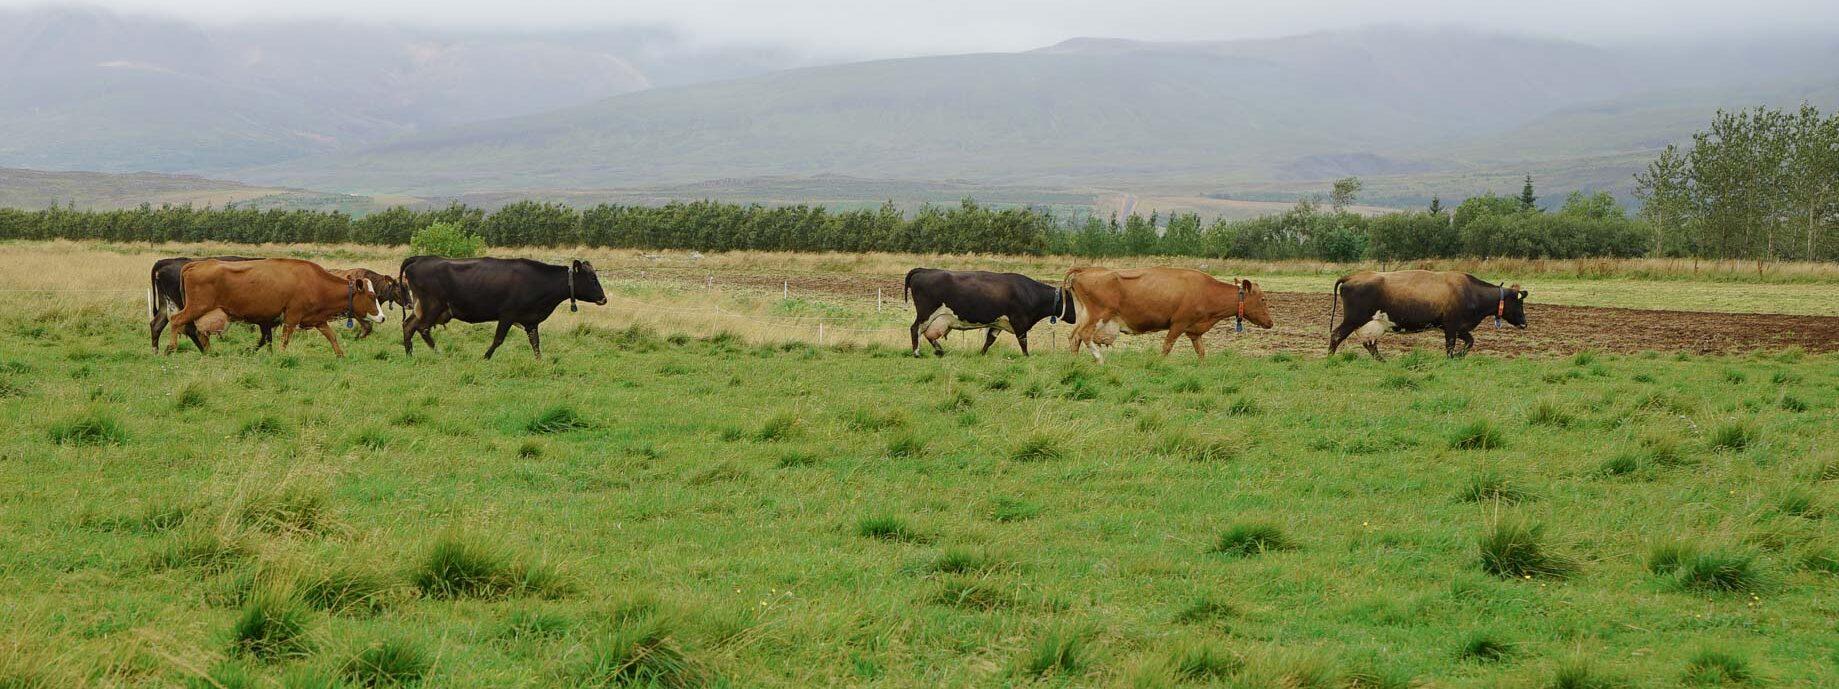 Kor går på en betesmark med dimmiga berg i bakgrunden.